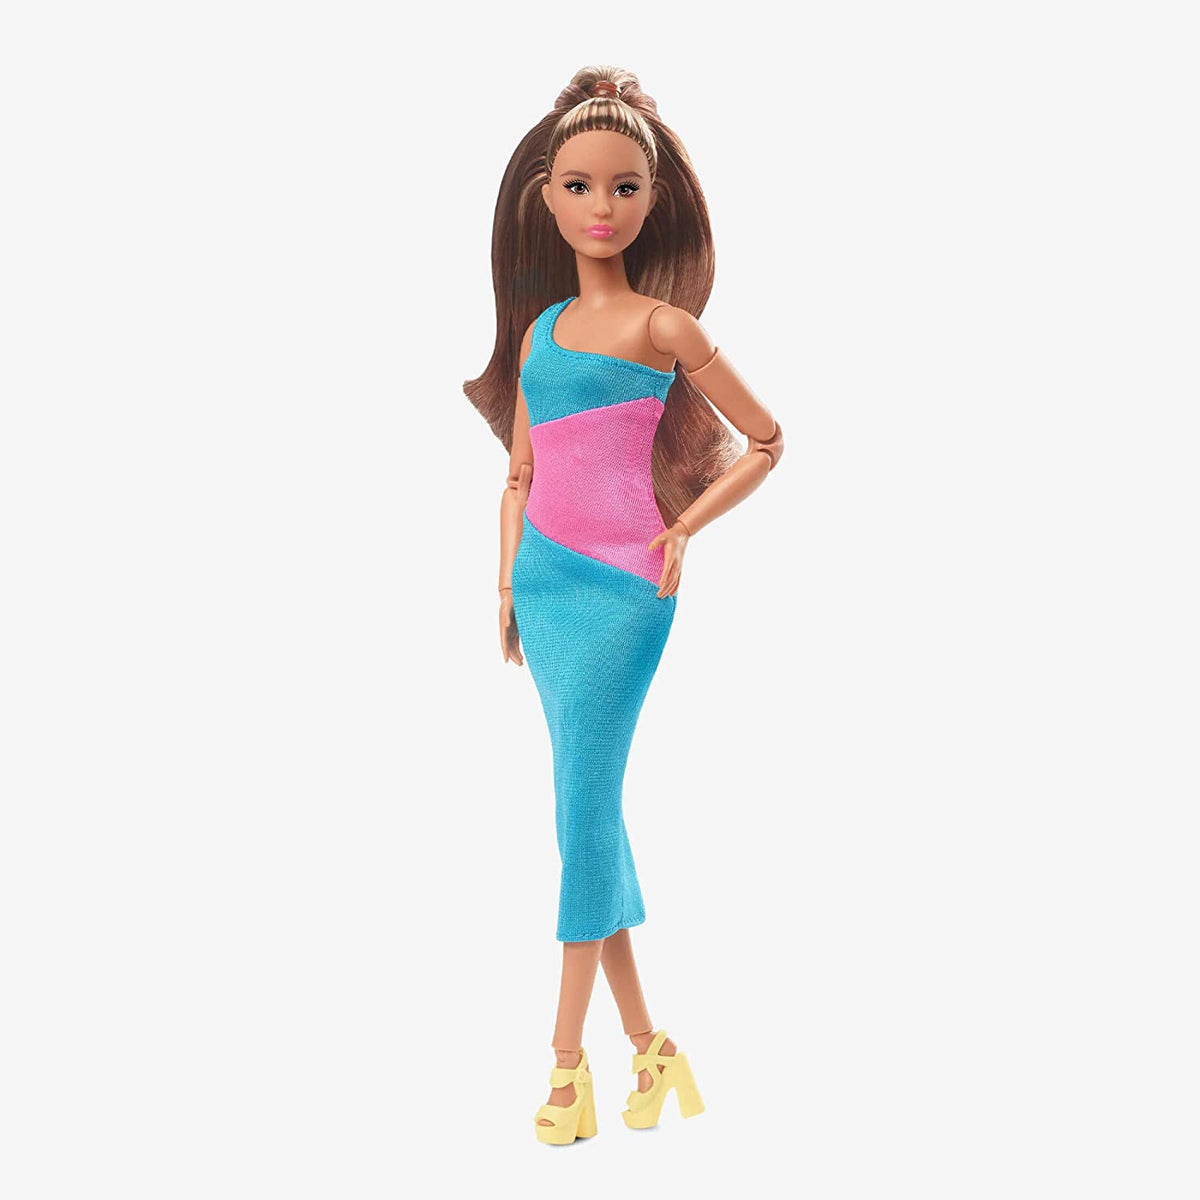 Barbie Signature Looks Model 15